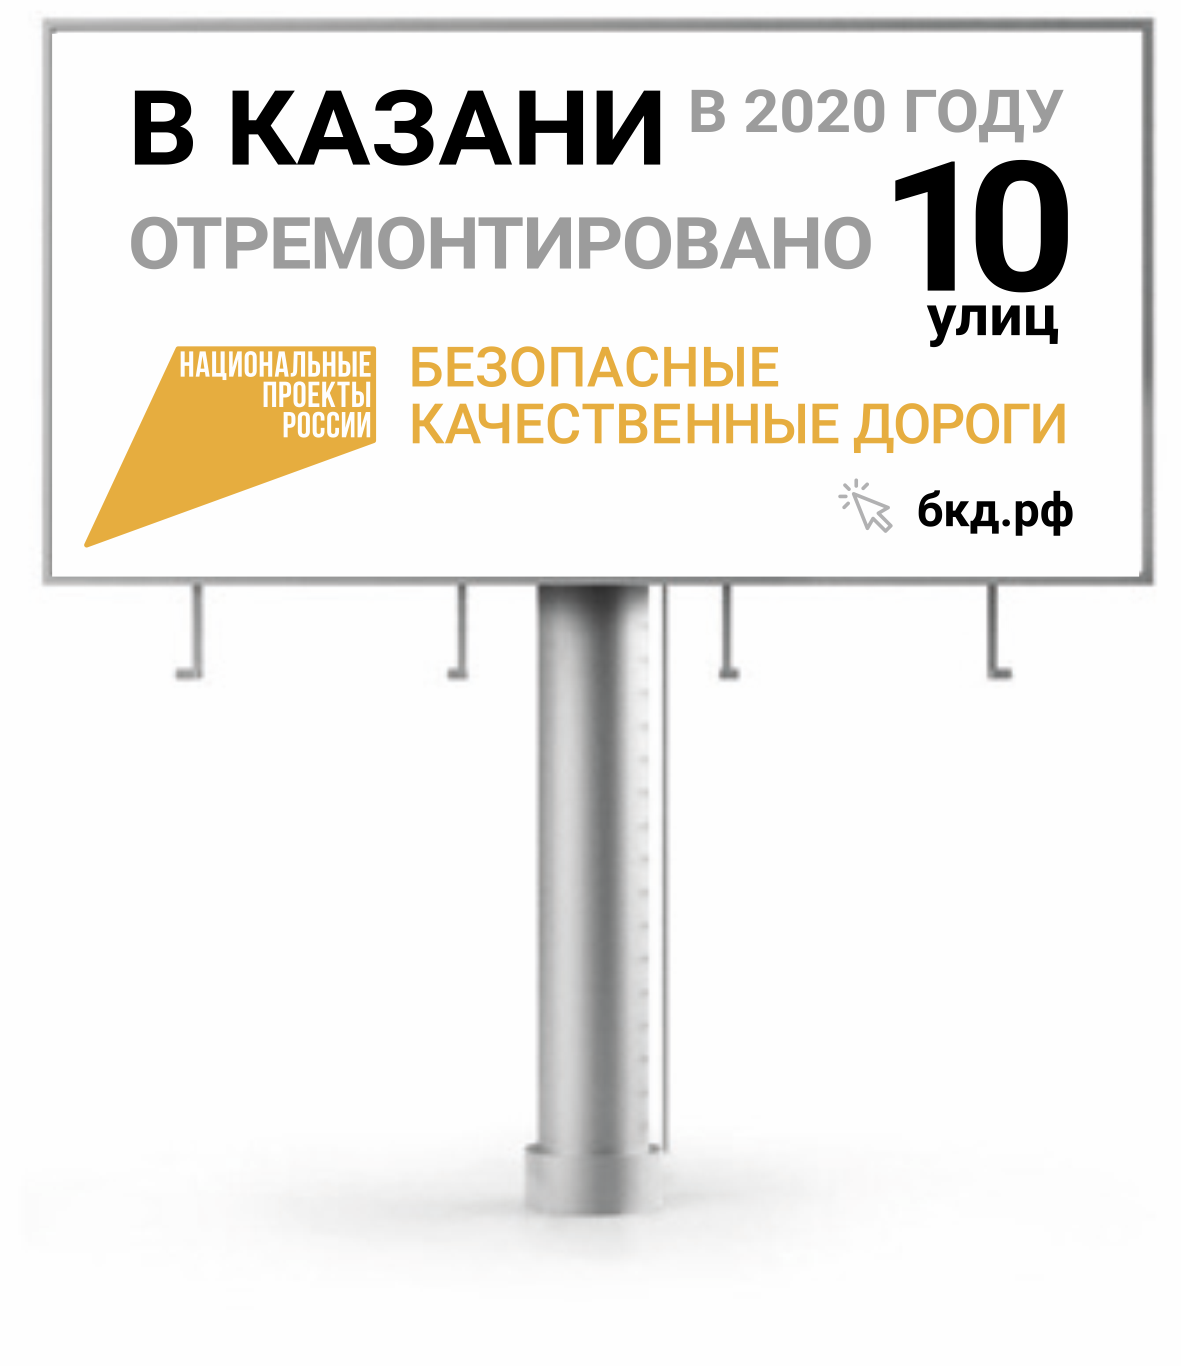 Информационный щит на объектах национального проекта “Безопасные и качественные автомобильные дороги”. Билборд "город"